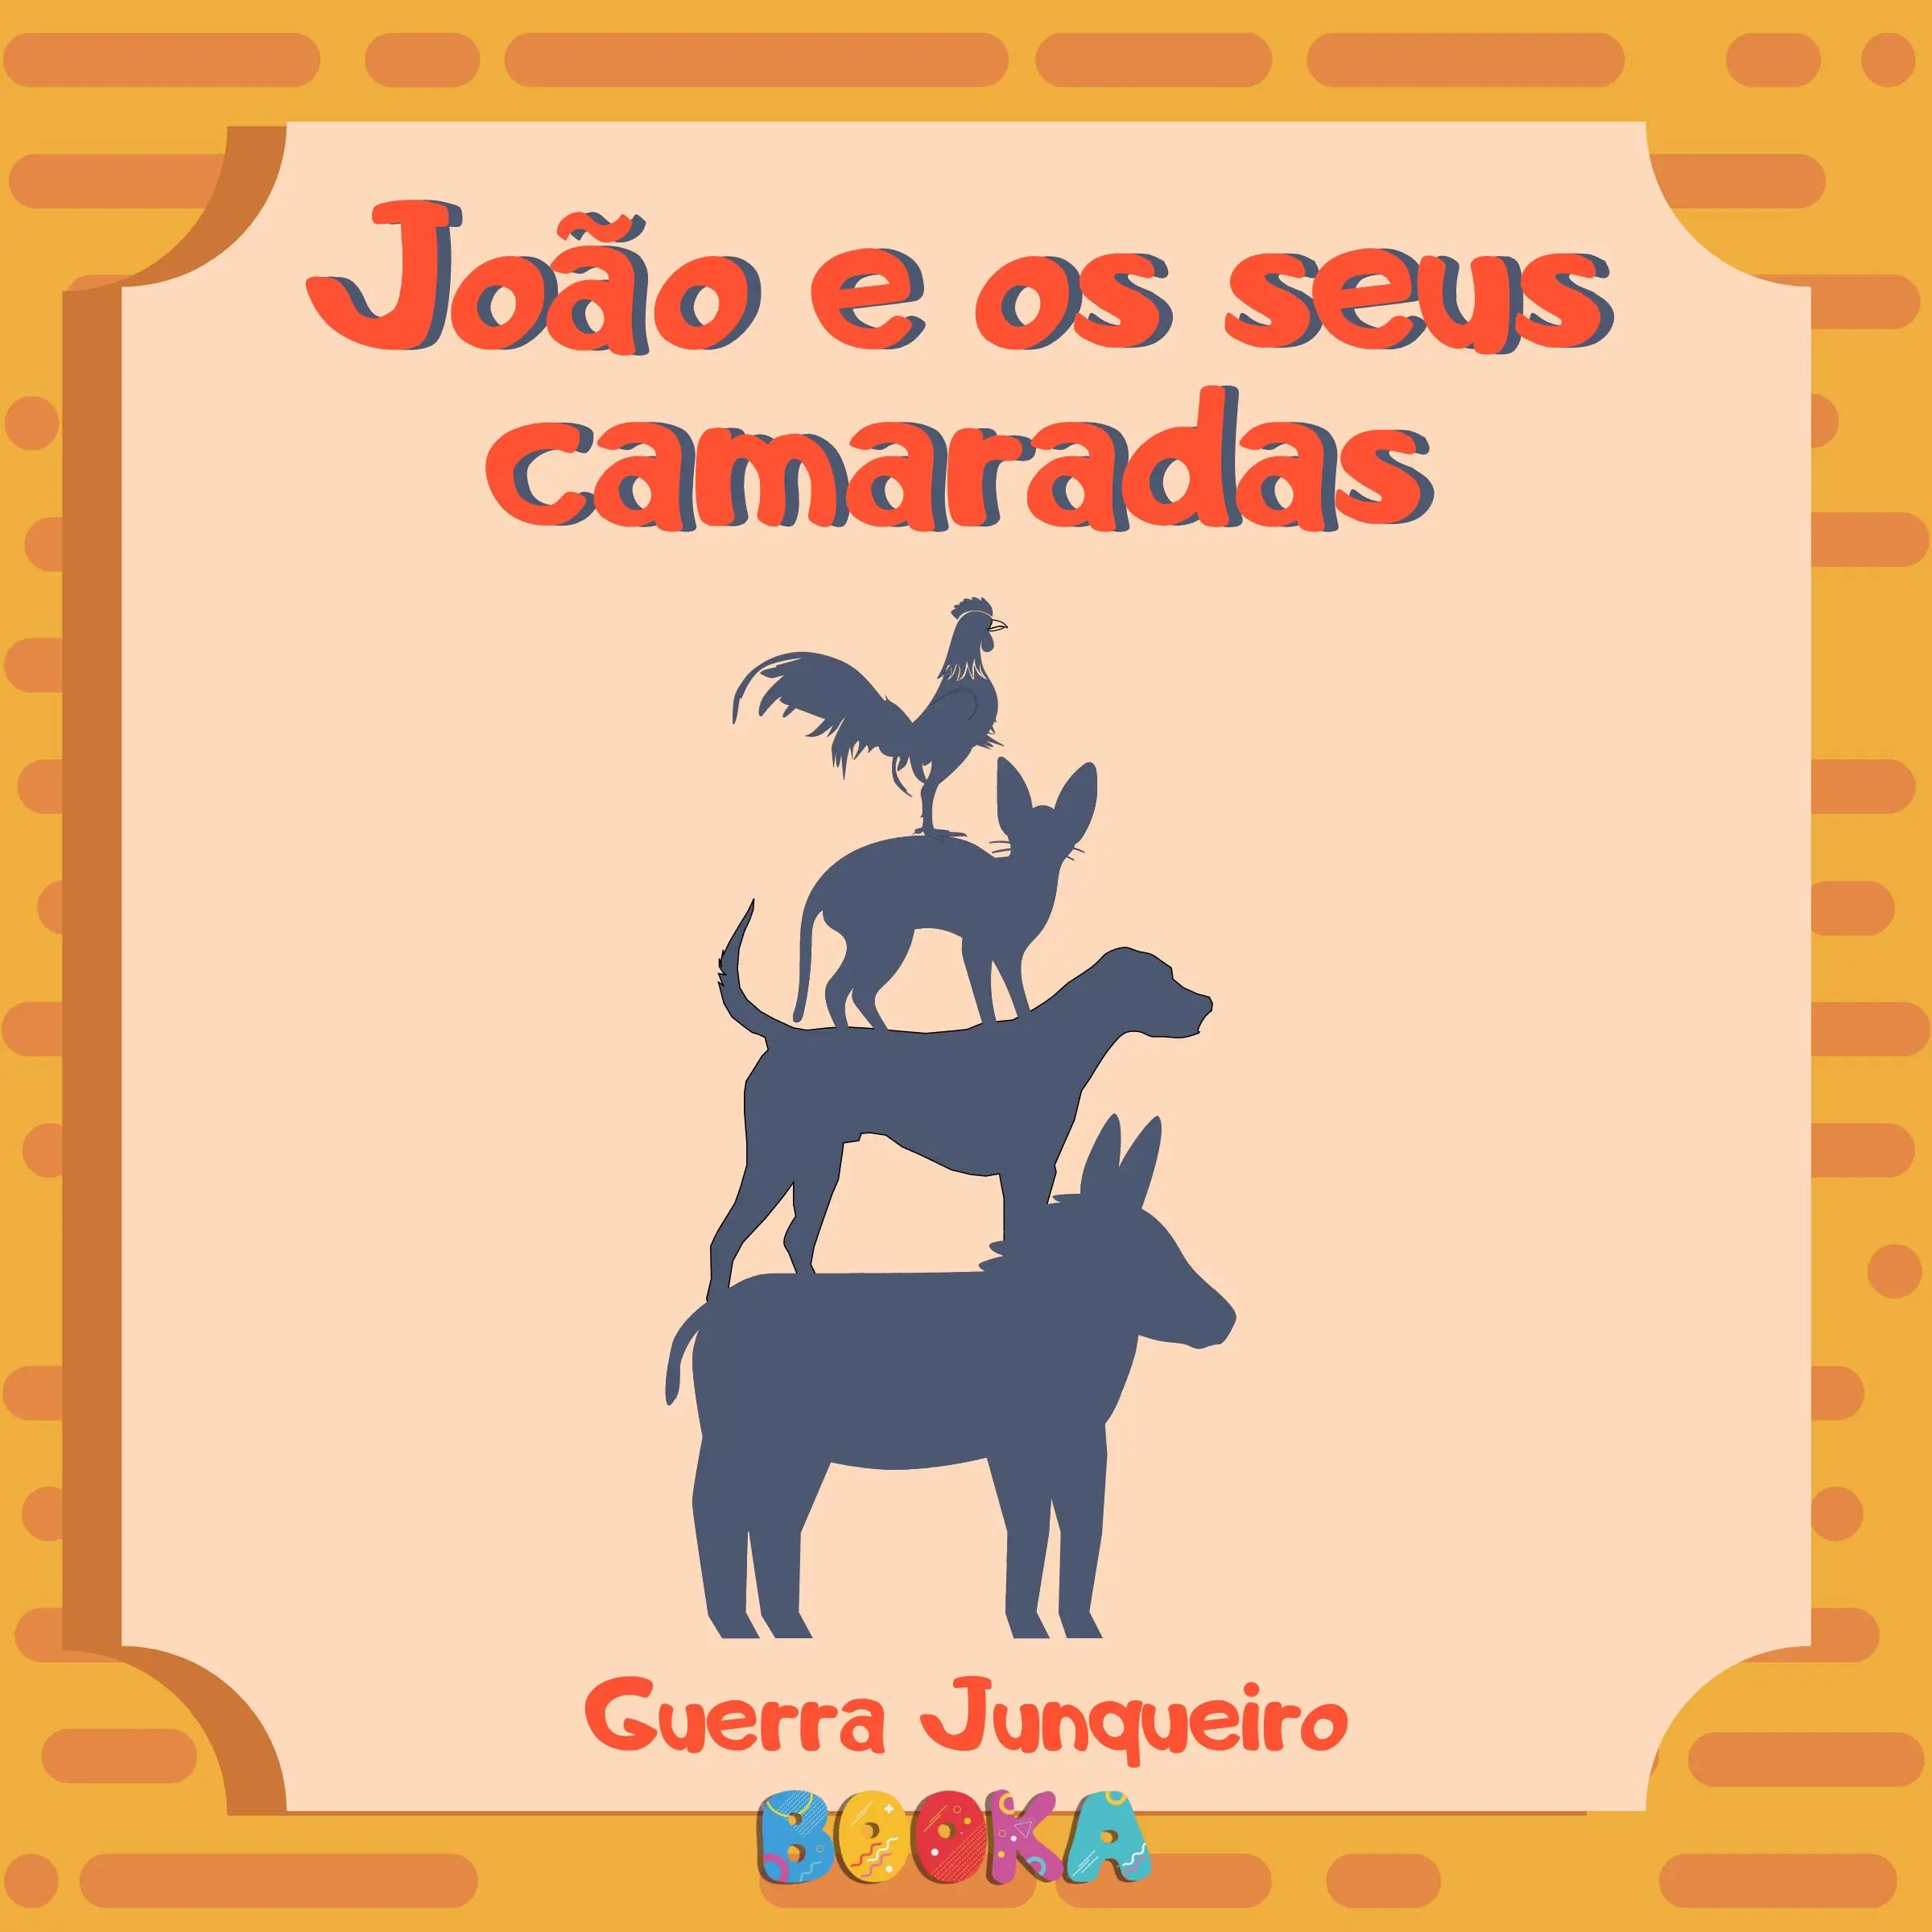 João e seus camaradas by Guerra Junqueiro Audiobook